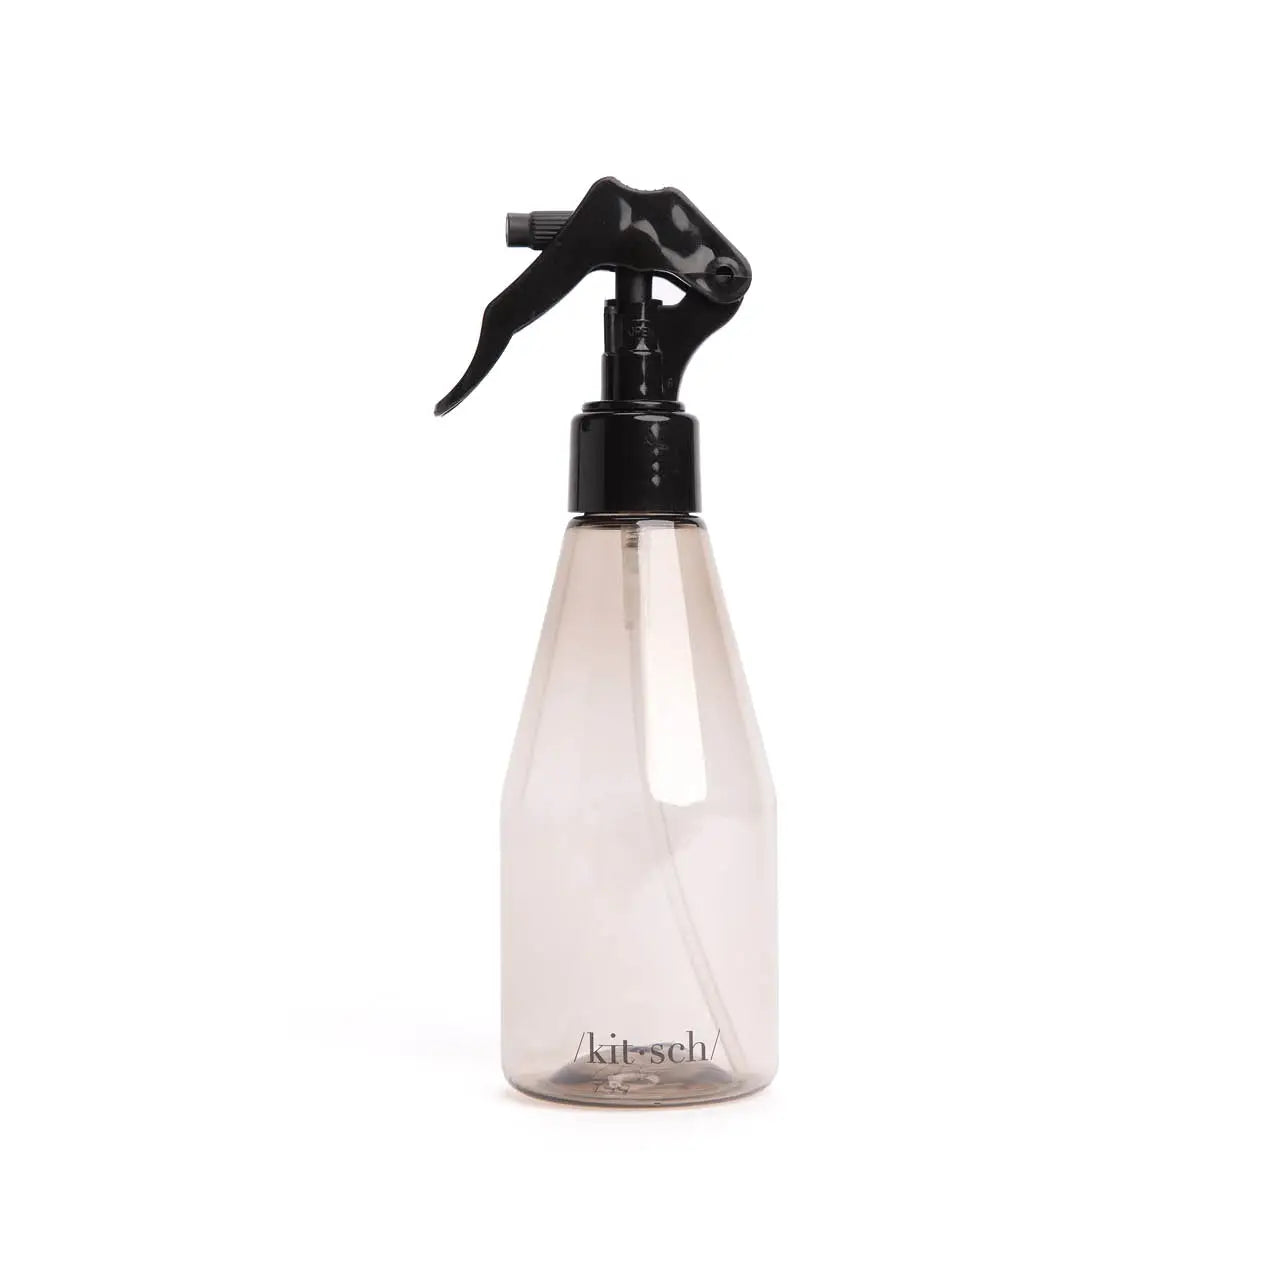 Haircare Spray Bottle